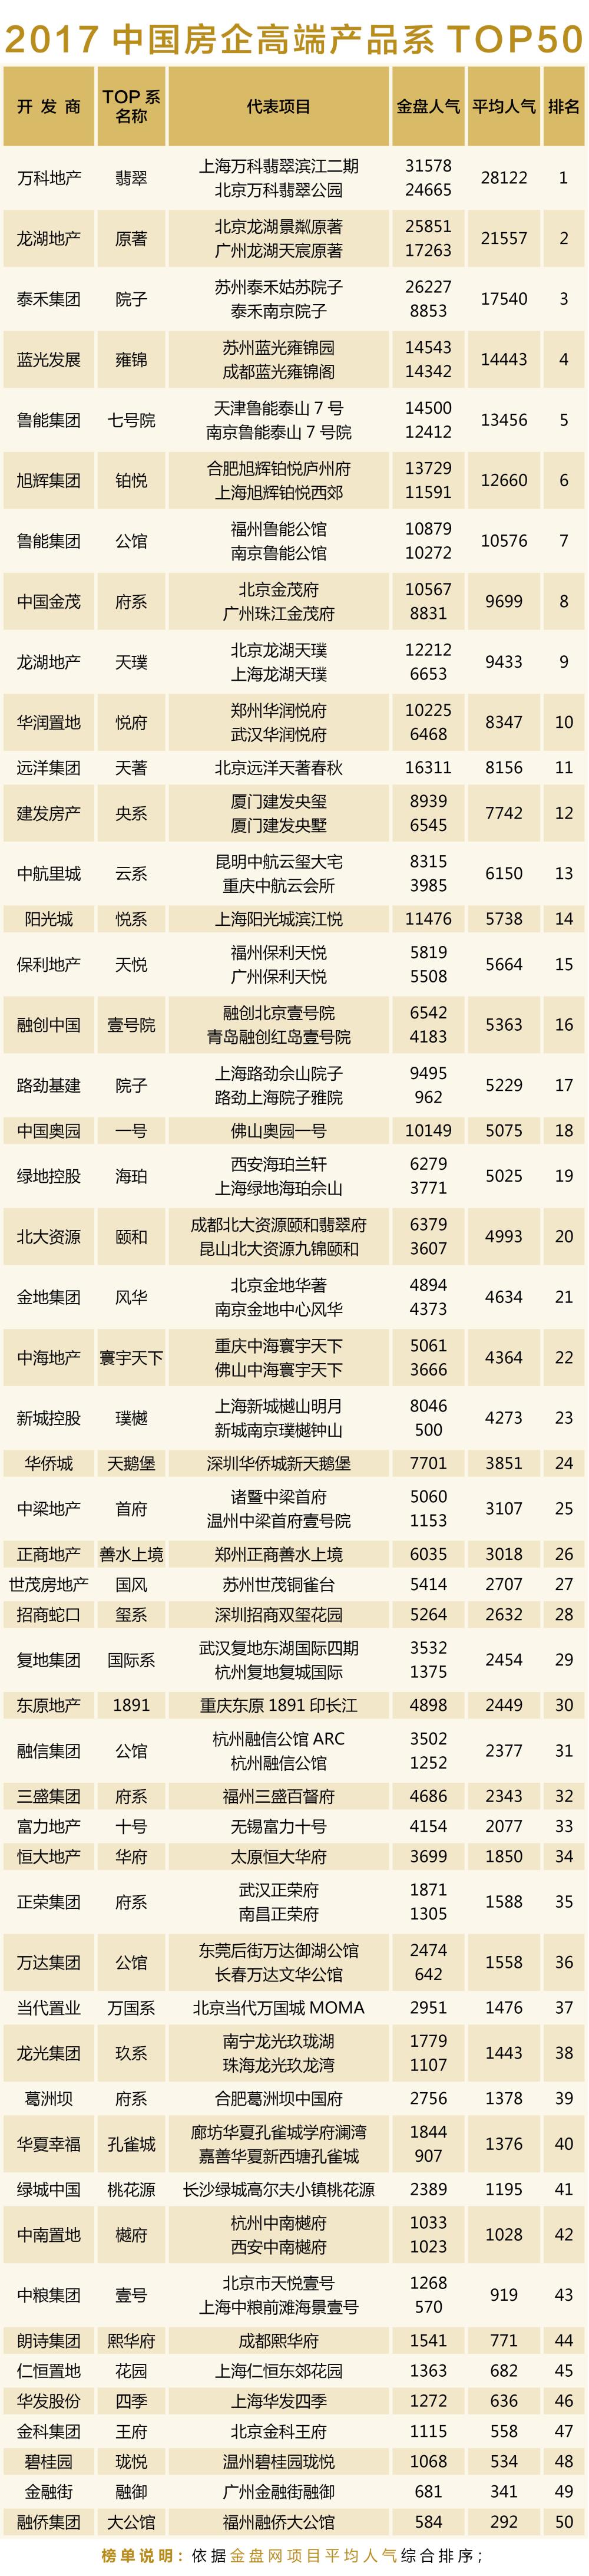 2017中国房企高端产品系TOP50